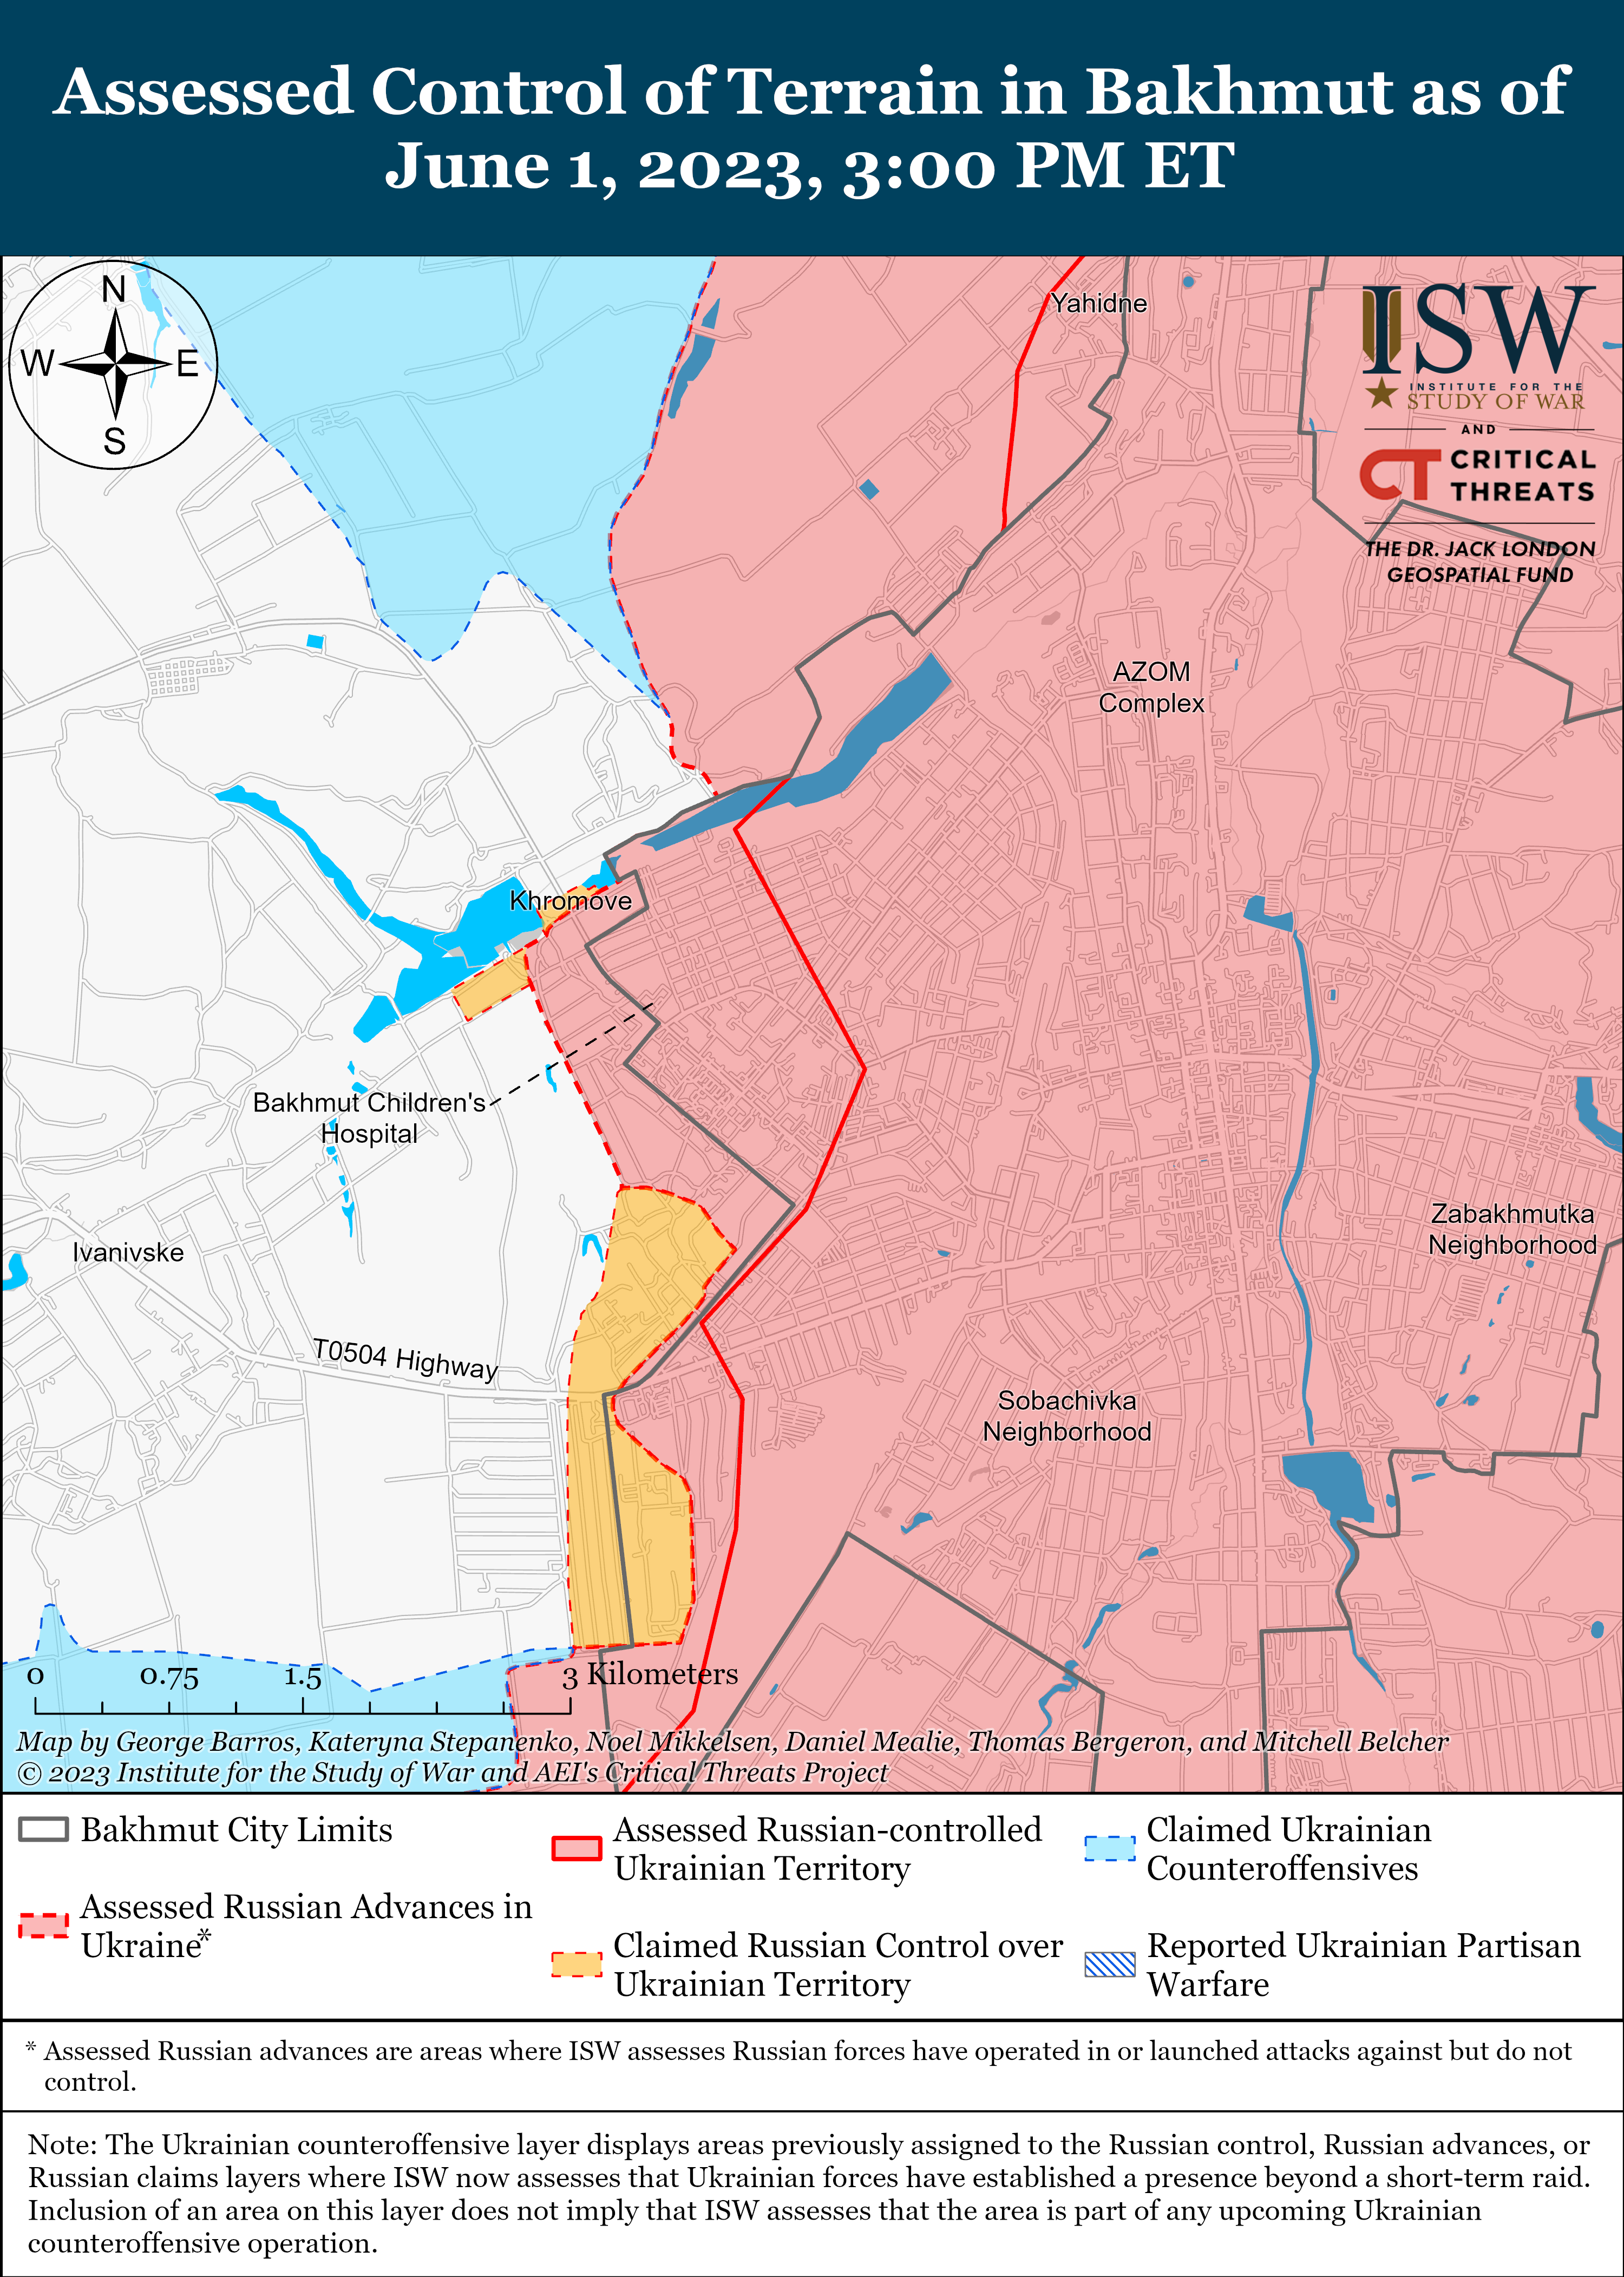 Українська артилерія "накриває" окупантів на Таврійському напрямку: карти боїв ISW